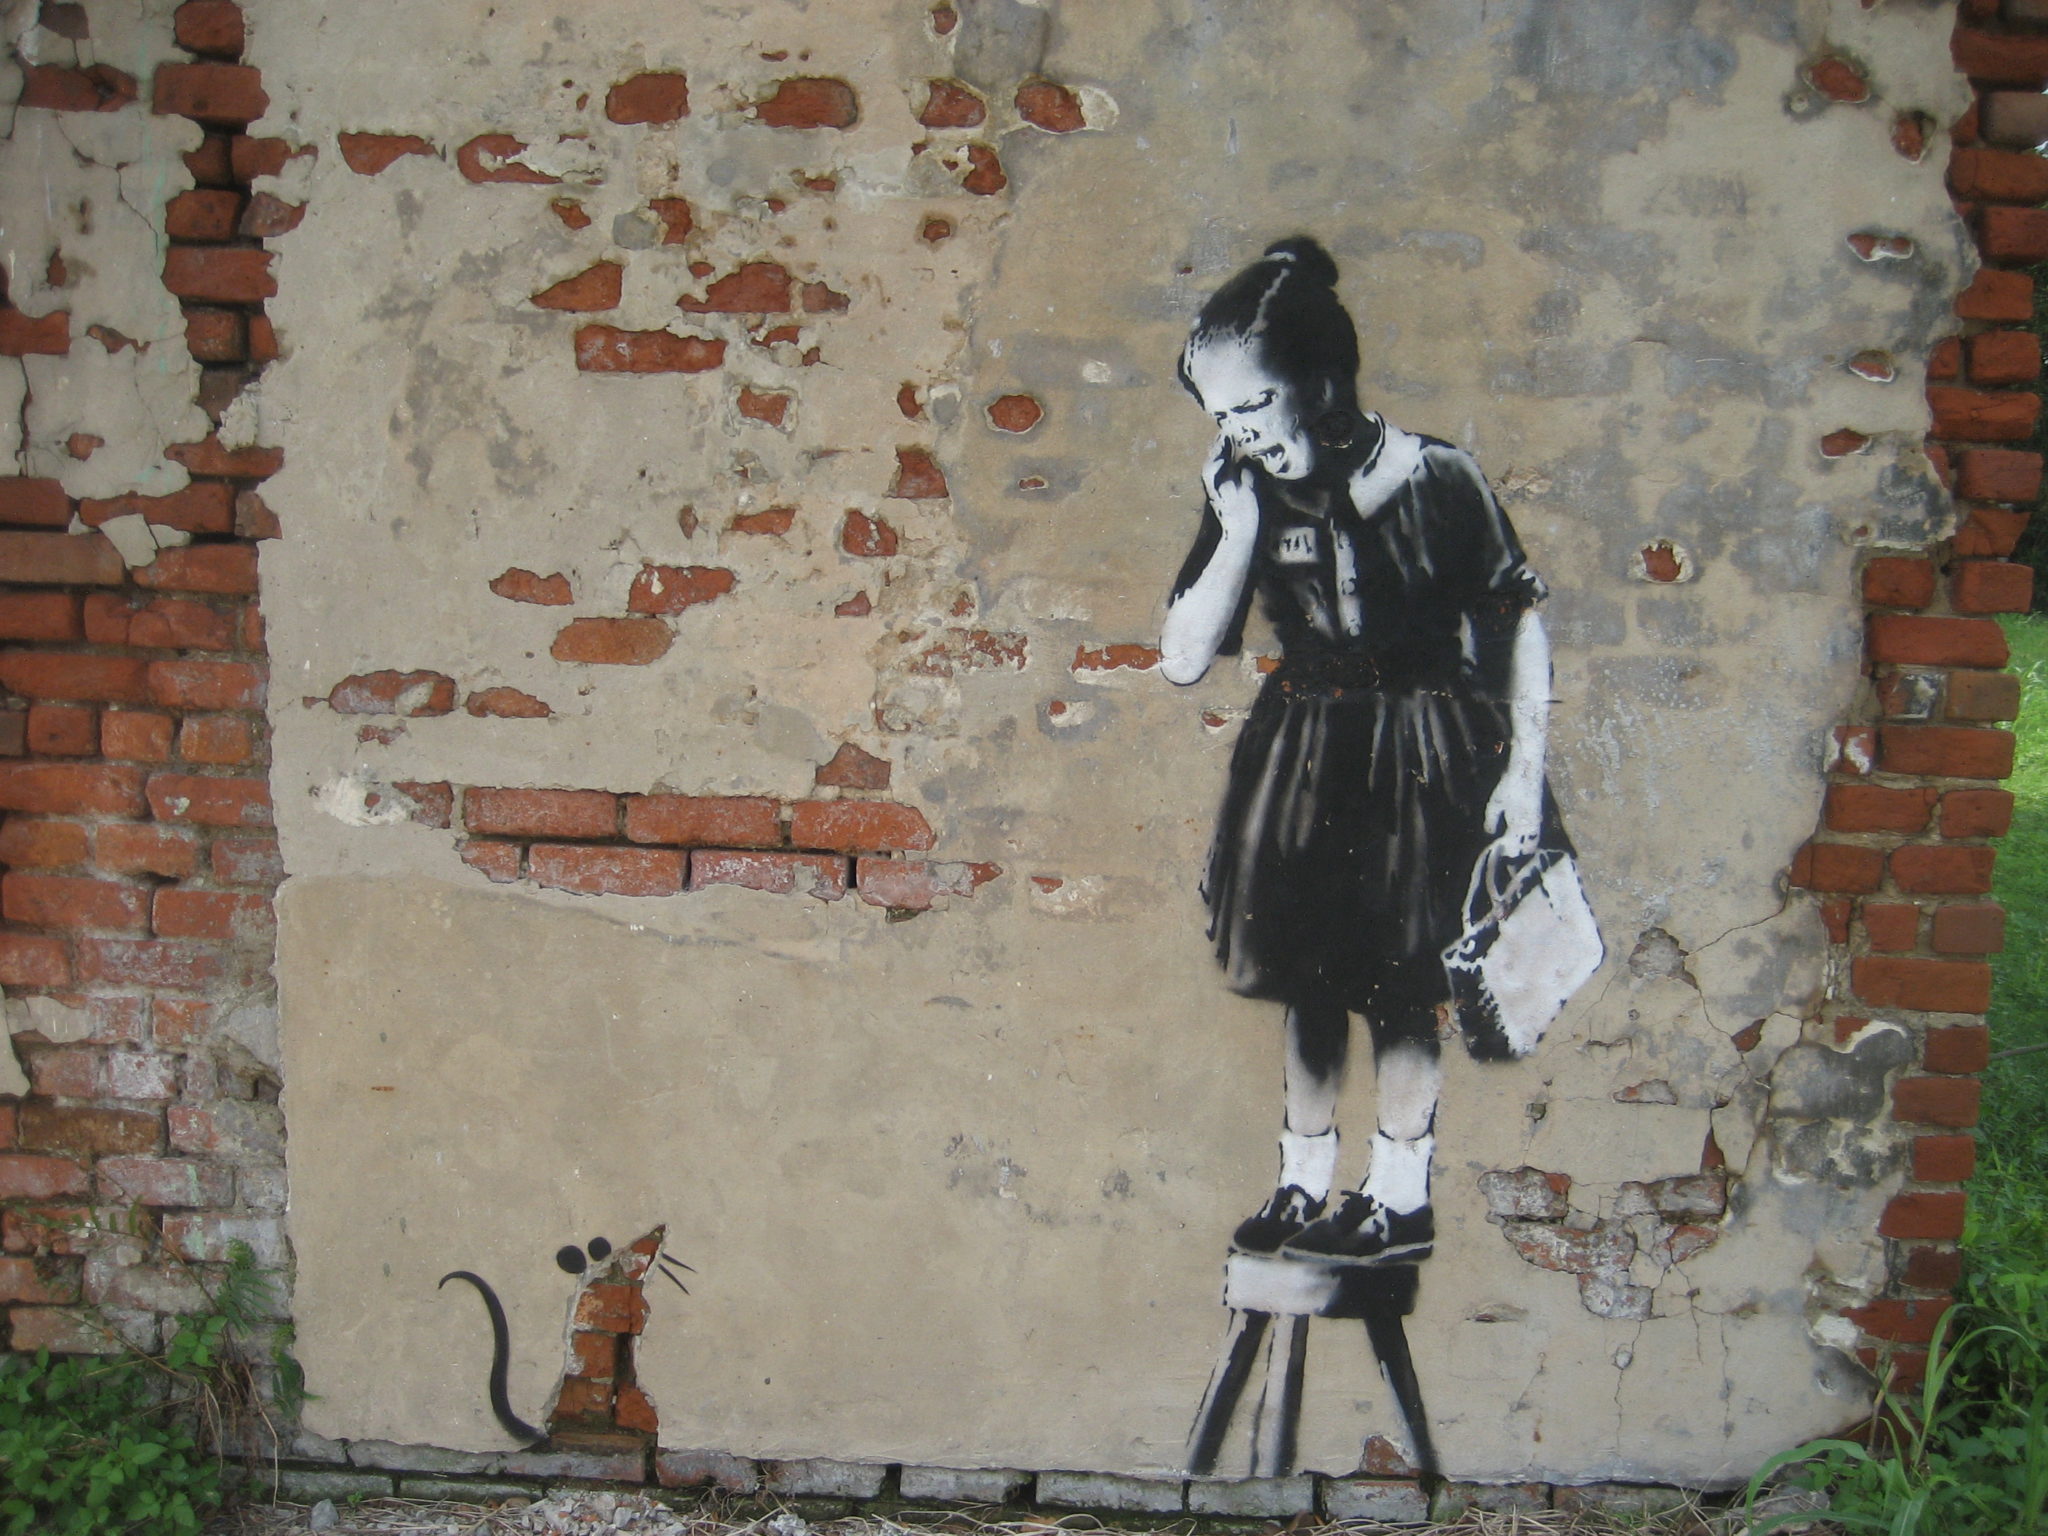 banksy ratgirl - et av hans dyreste kunstverk